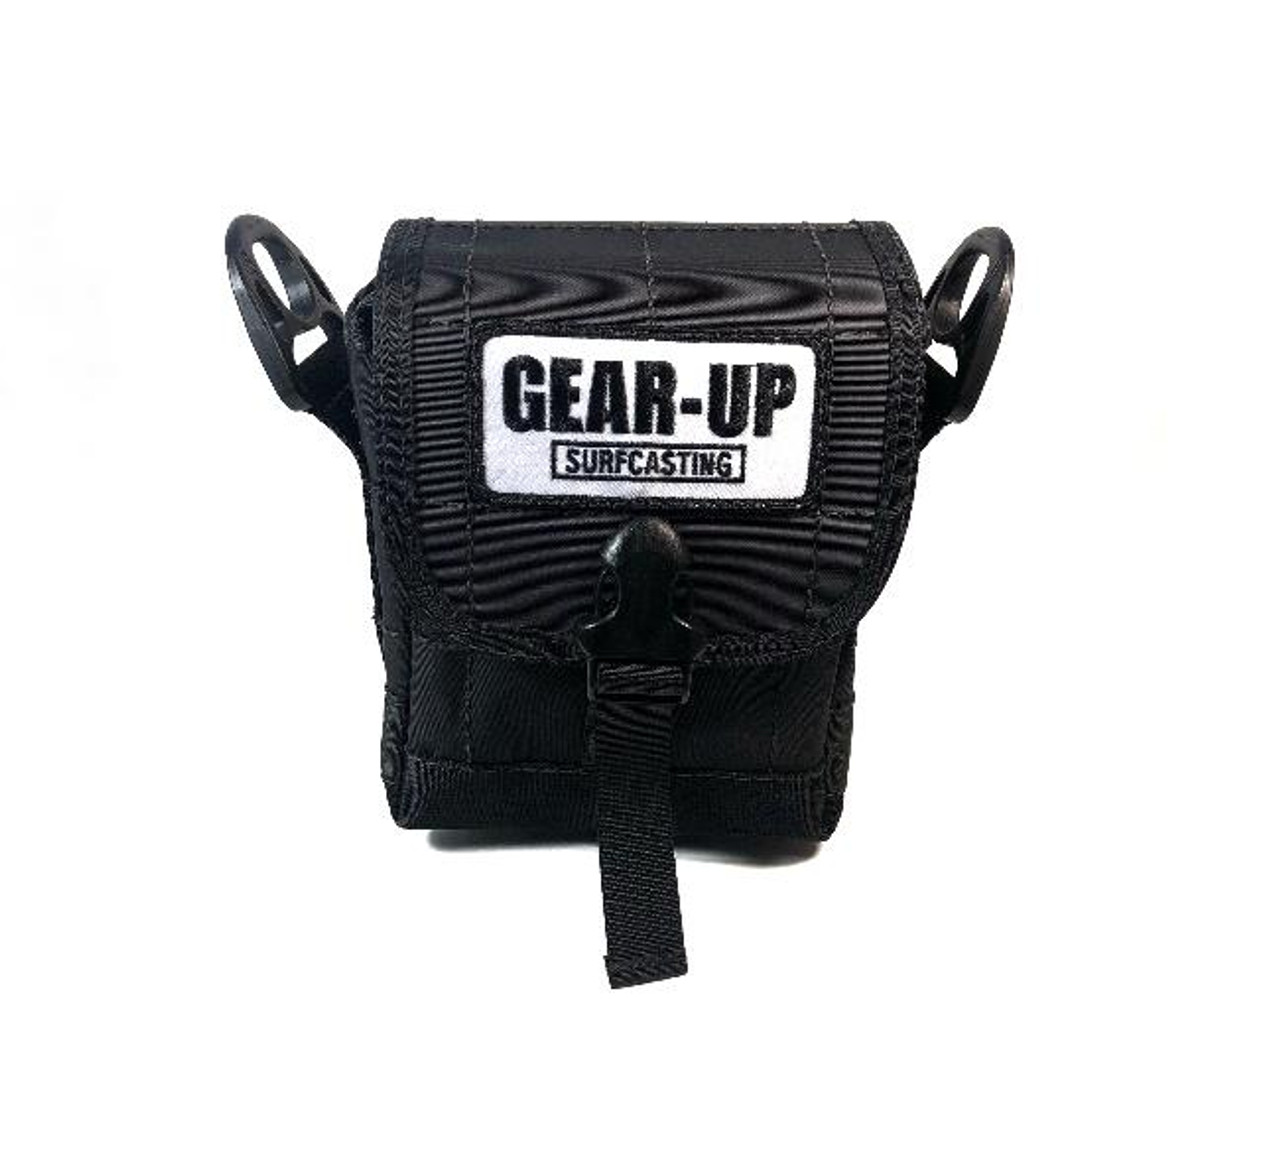 Gear-Up Surfcasting Short Surf Bag